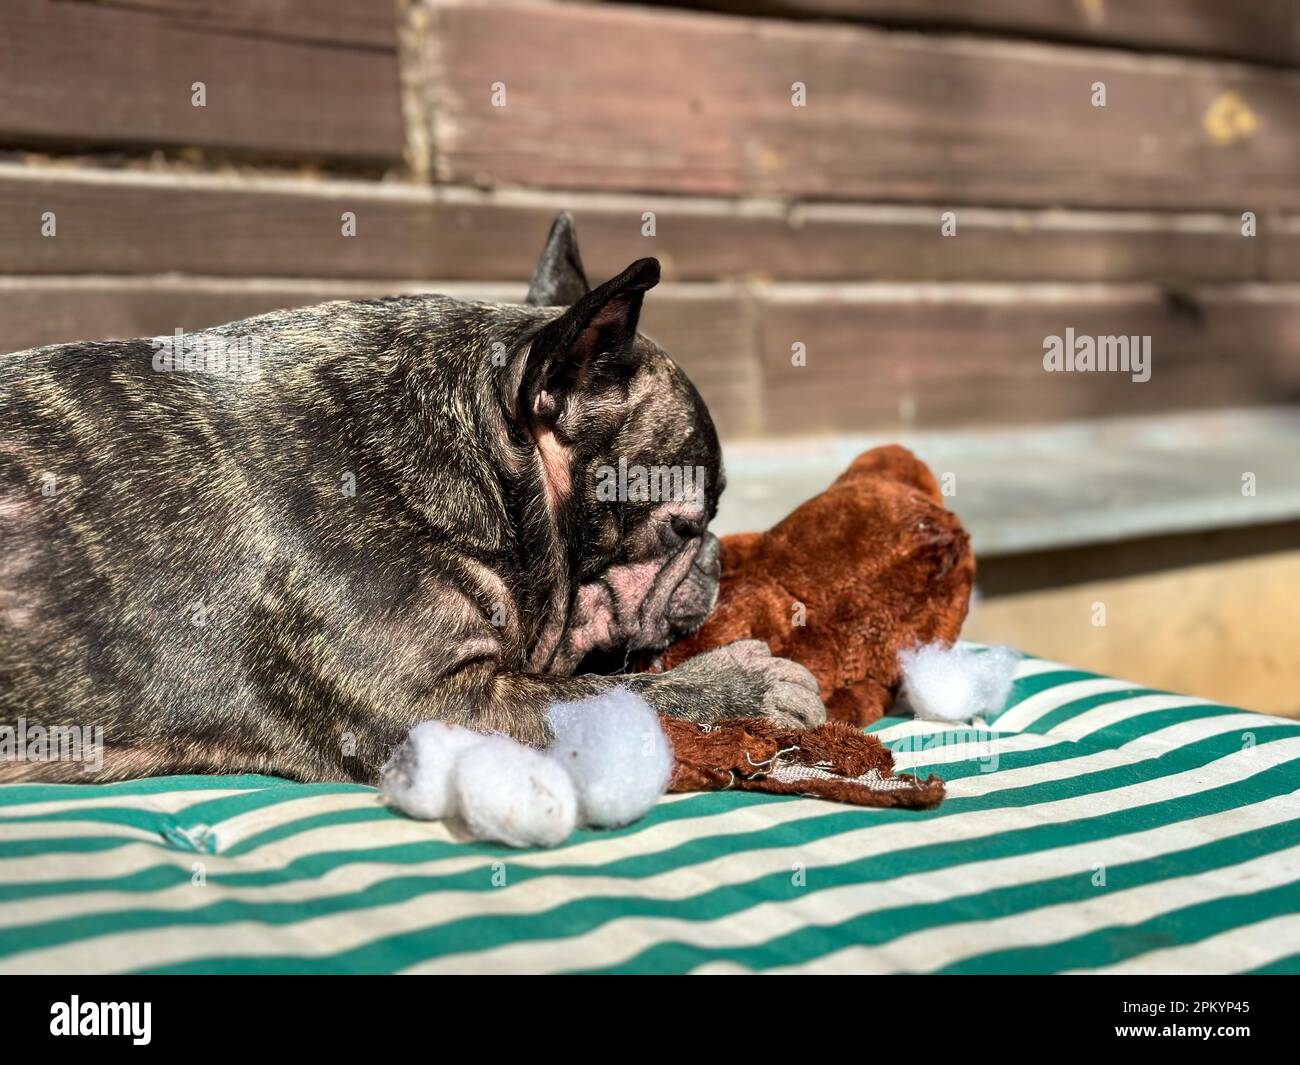 Dunkelbraune Bulldogge liegt auf einer grün gestreiften Decke und nagt an einem gefüllten Teddybär am Herd, wobei Watte herauskommt. Stockfoto